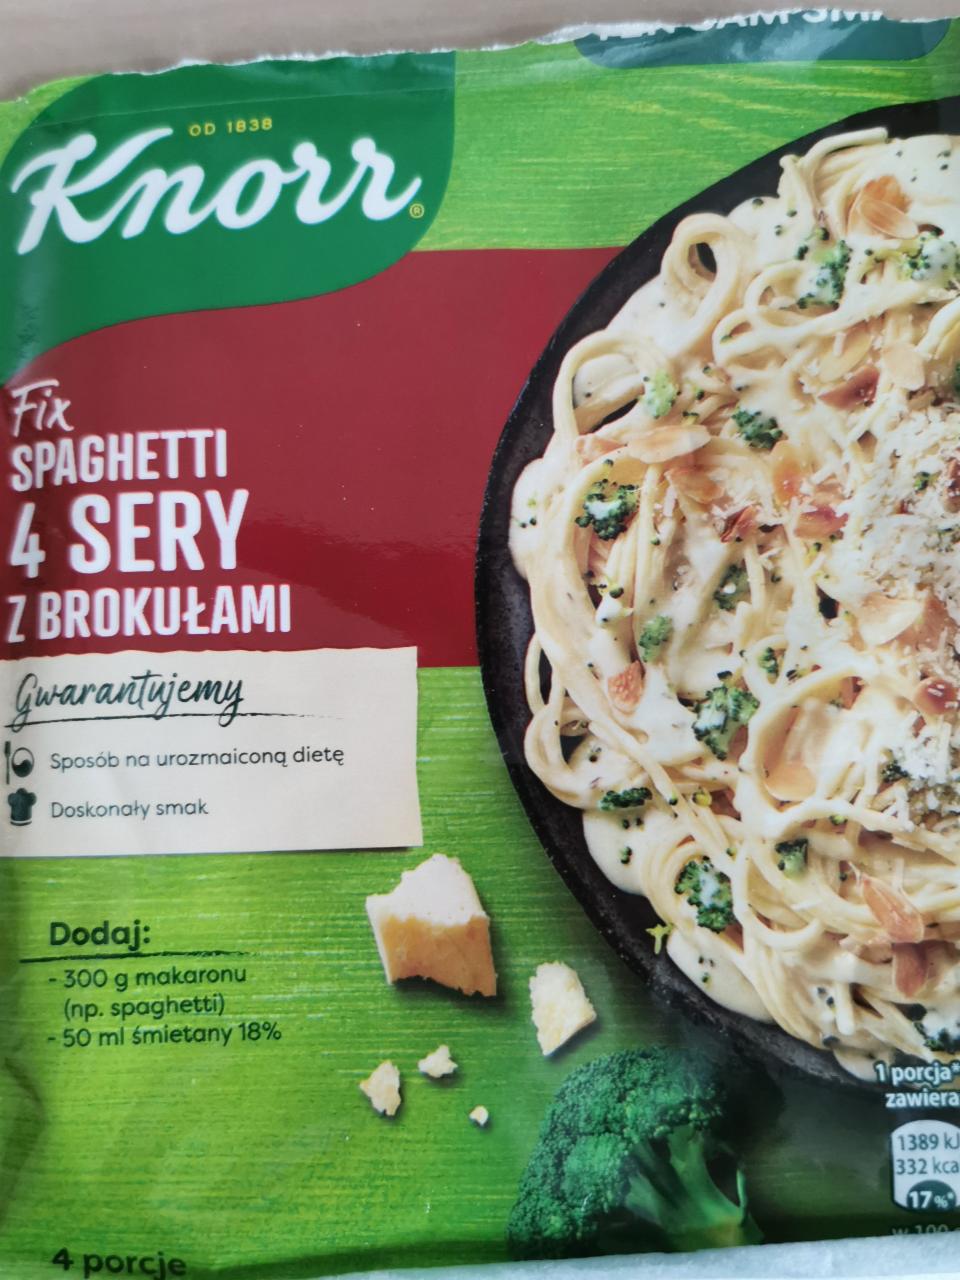 Фото - Fix spaghetti 4 sery z brokułami Knorr